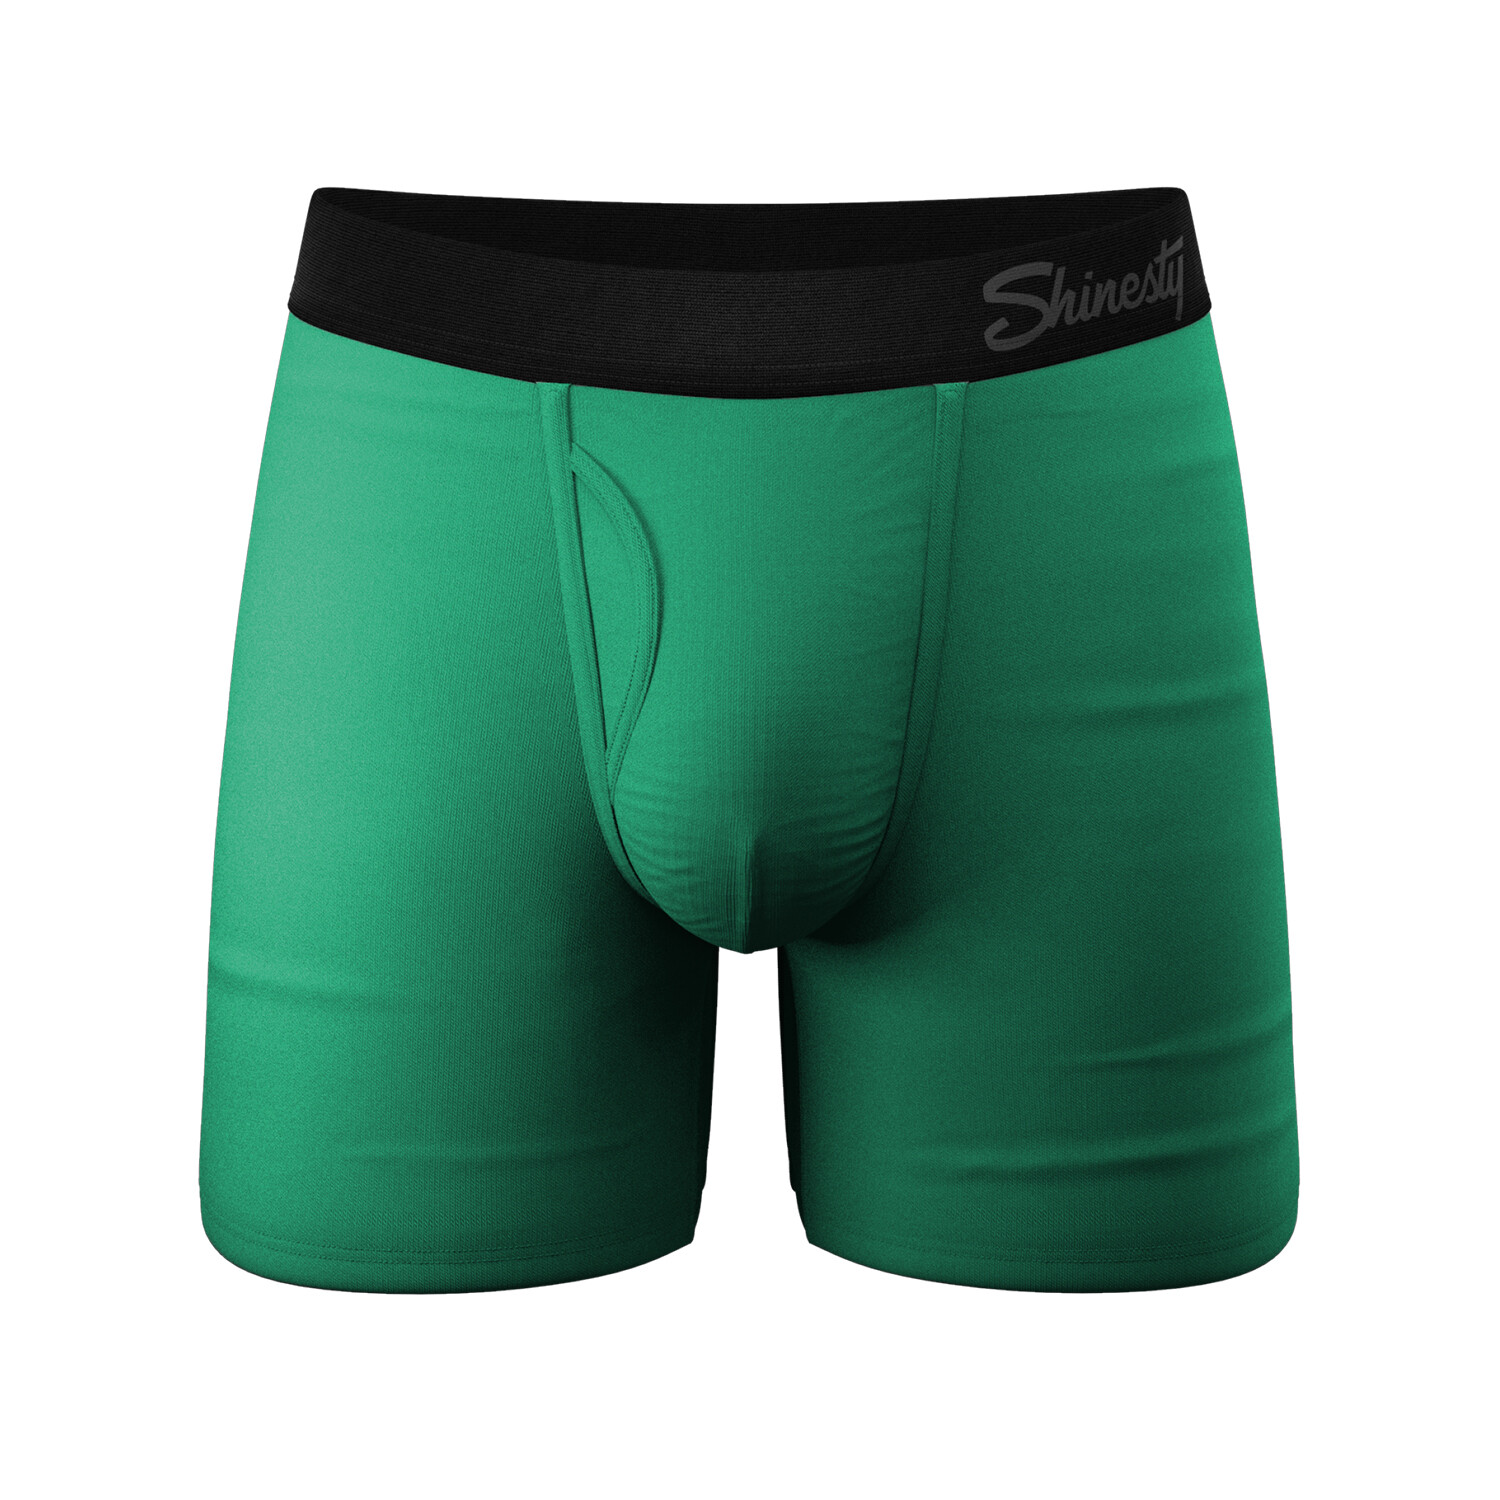 Shinesty Ball Hammock Pouch Underwear, men's size medium, new.